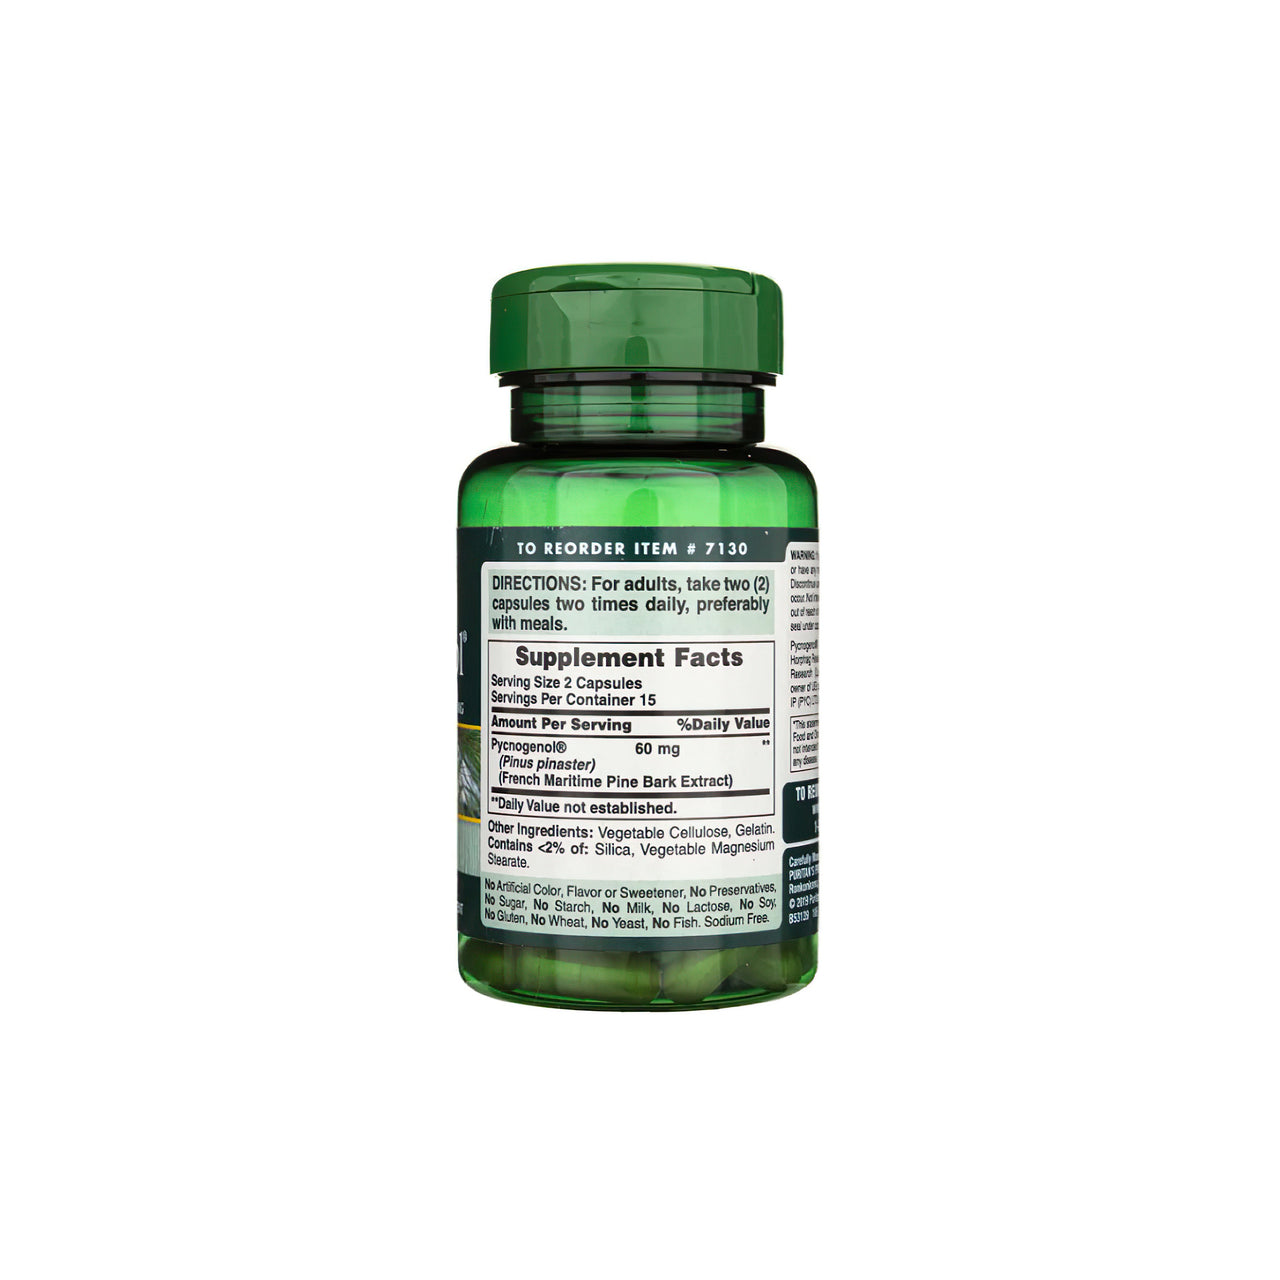 Un flacone di Pycnogenol 30 mg 30 capsule a rilascio rapido di Puritan's Pride con flavonoidi proantocianidi.